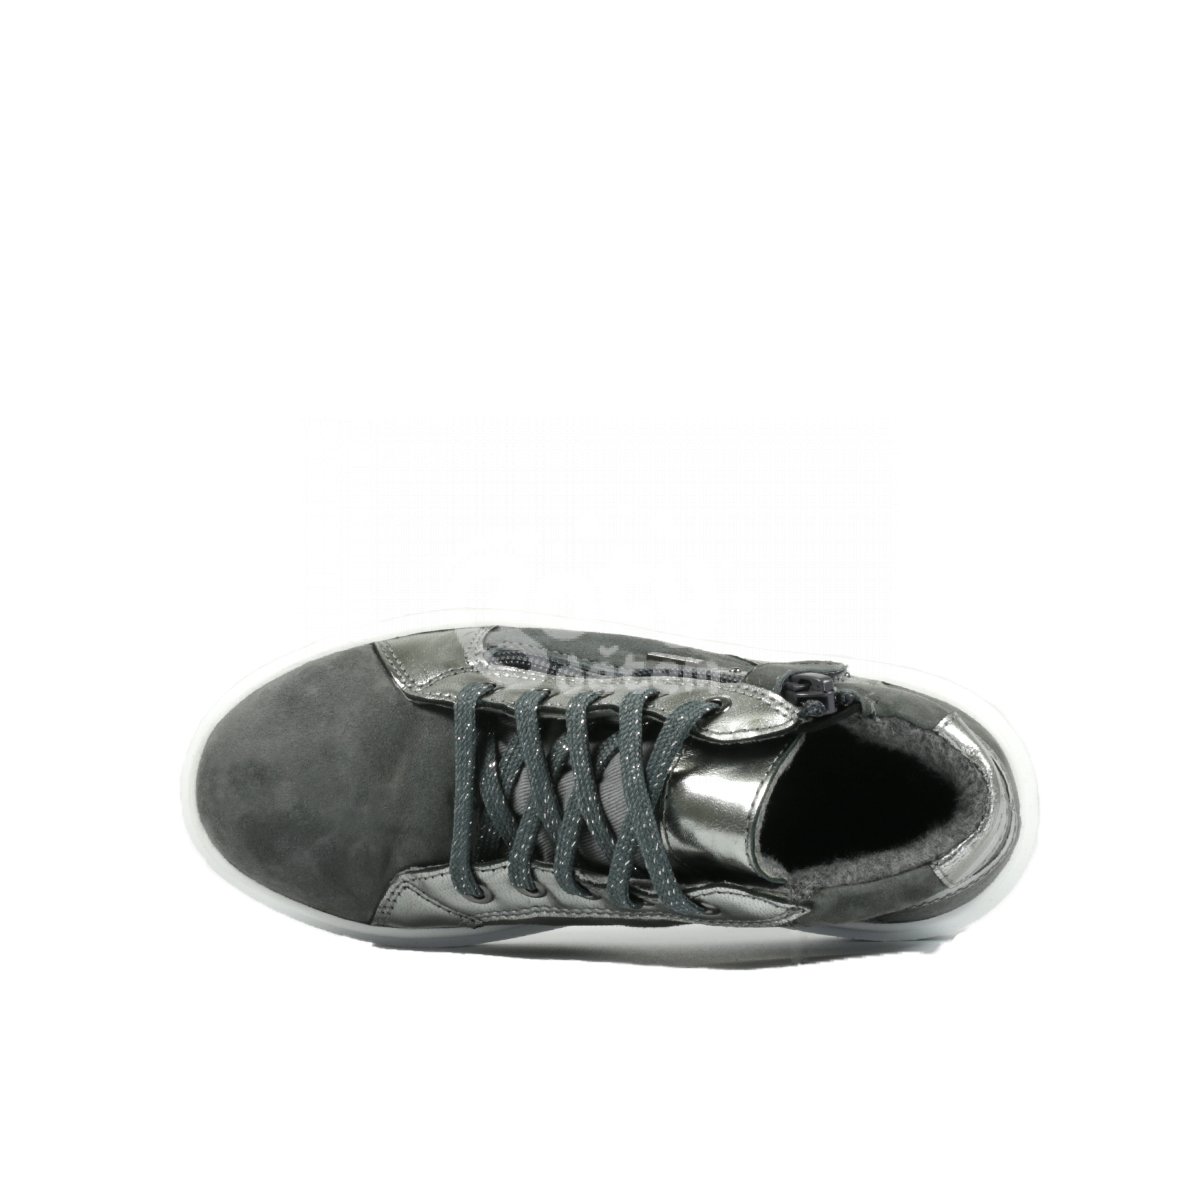 Kožená obuv s membránou Alessa Richter 4555-6111-6300 ash